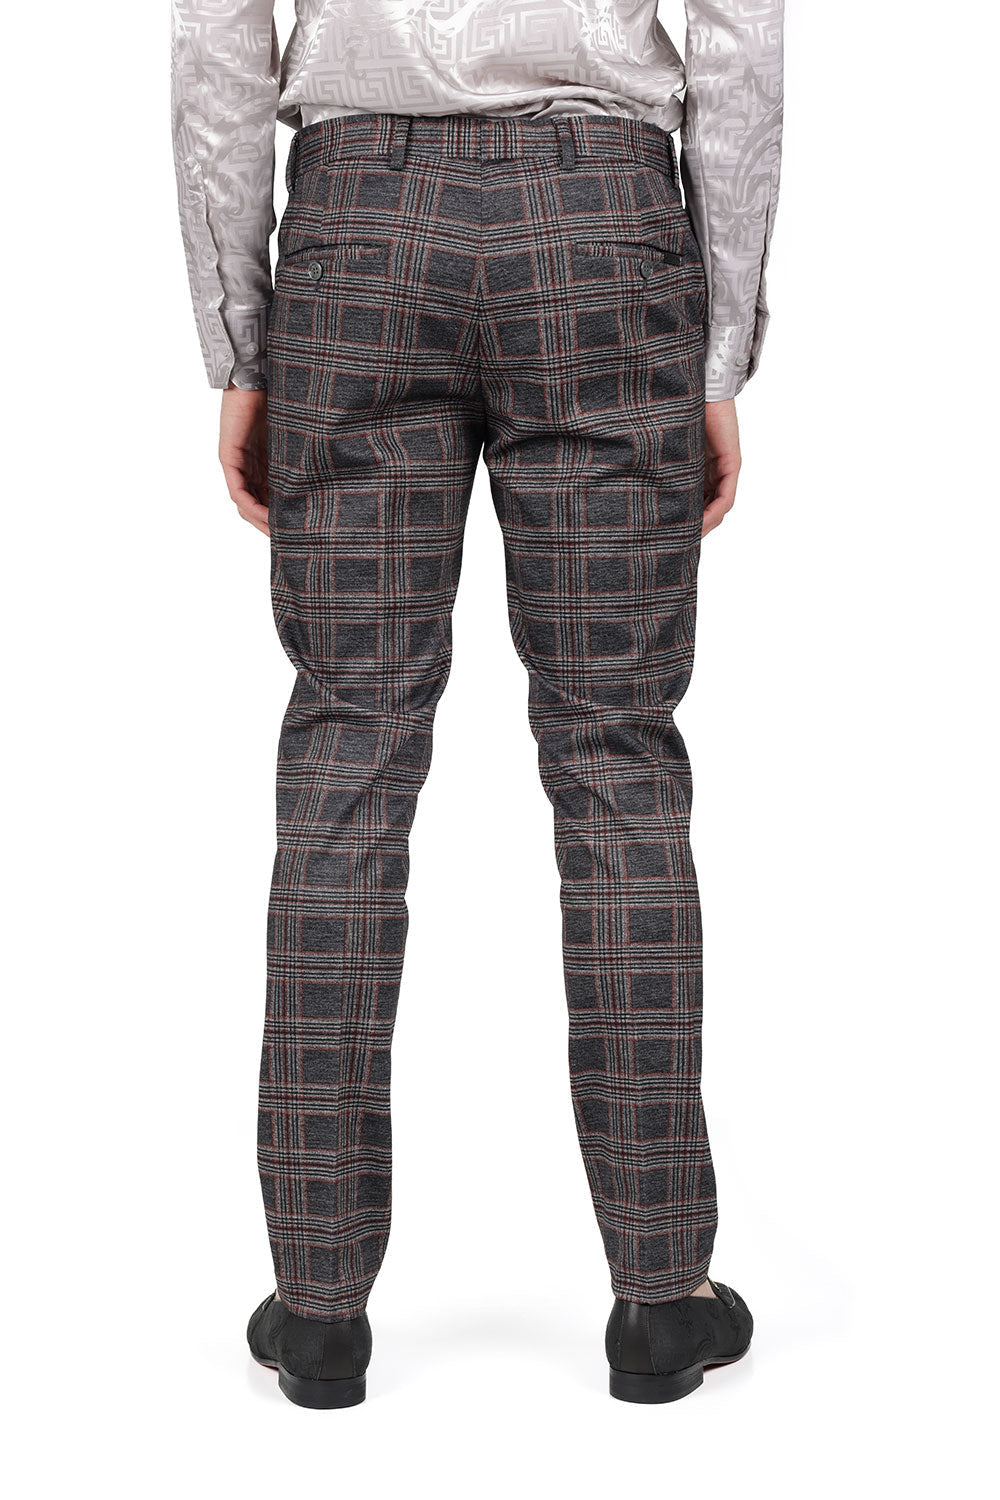 BARABAS men's checkered plaid grey orange chino pants CP156 Grey Orange